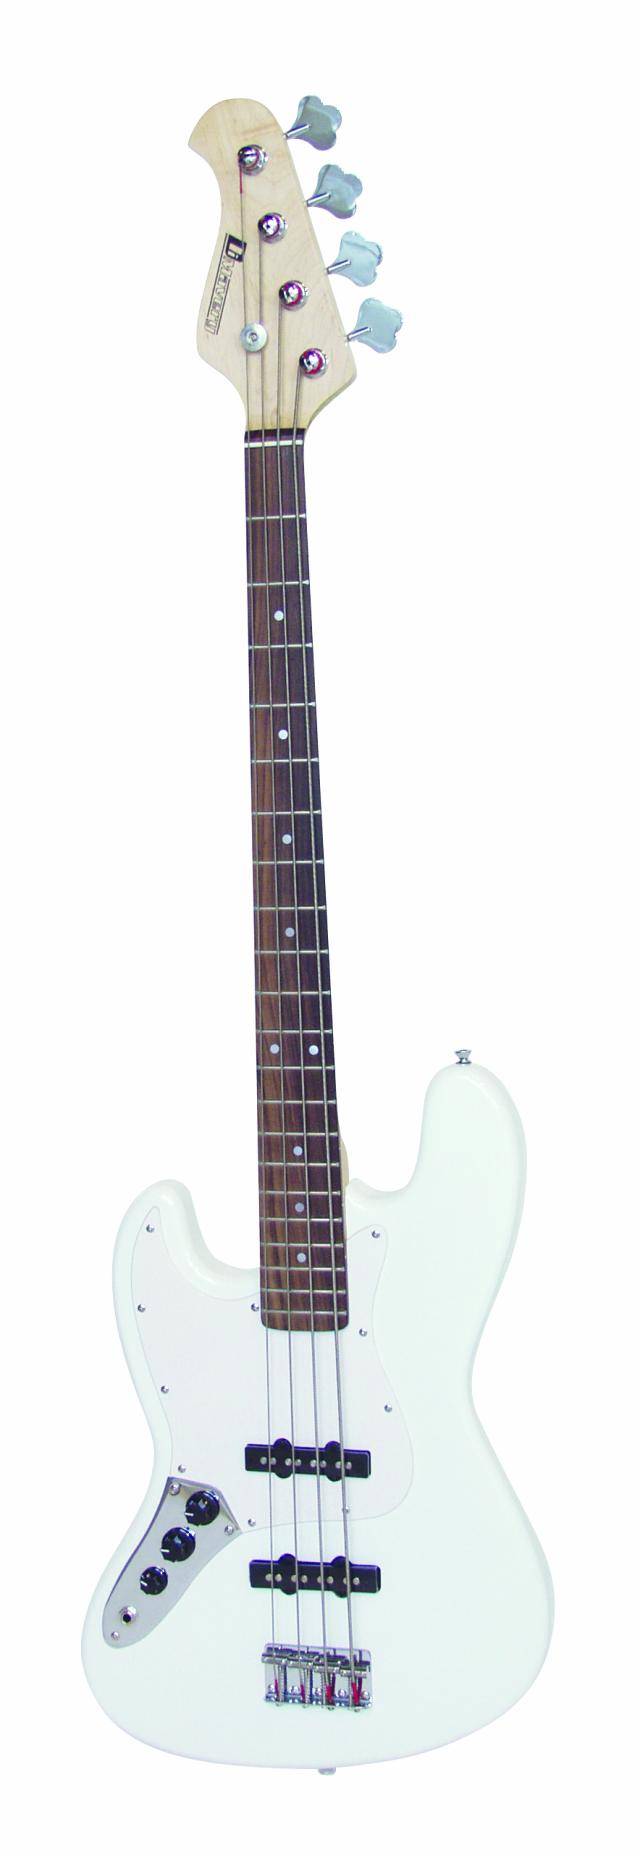 Dimavery JB-302 elektrická baskytara LH, bílý